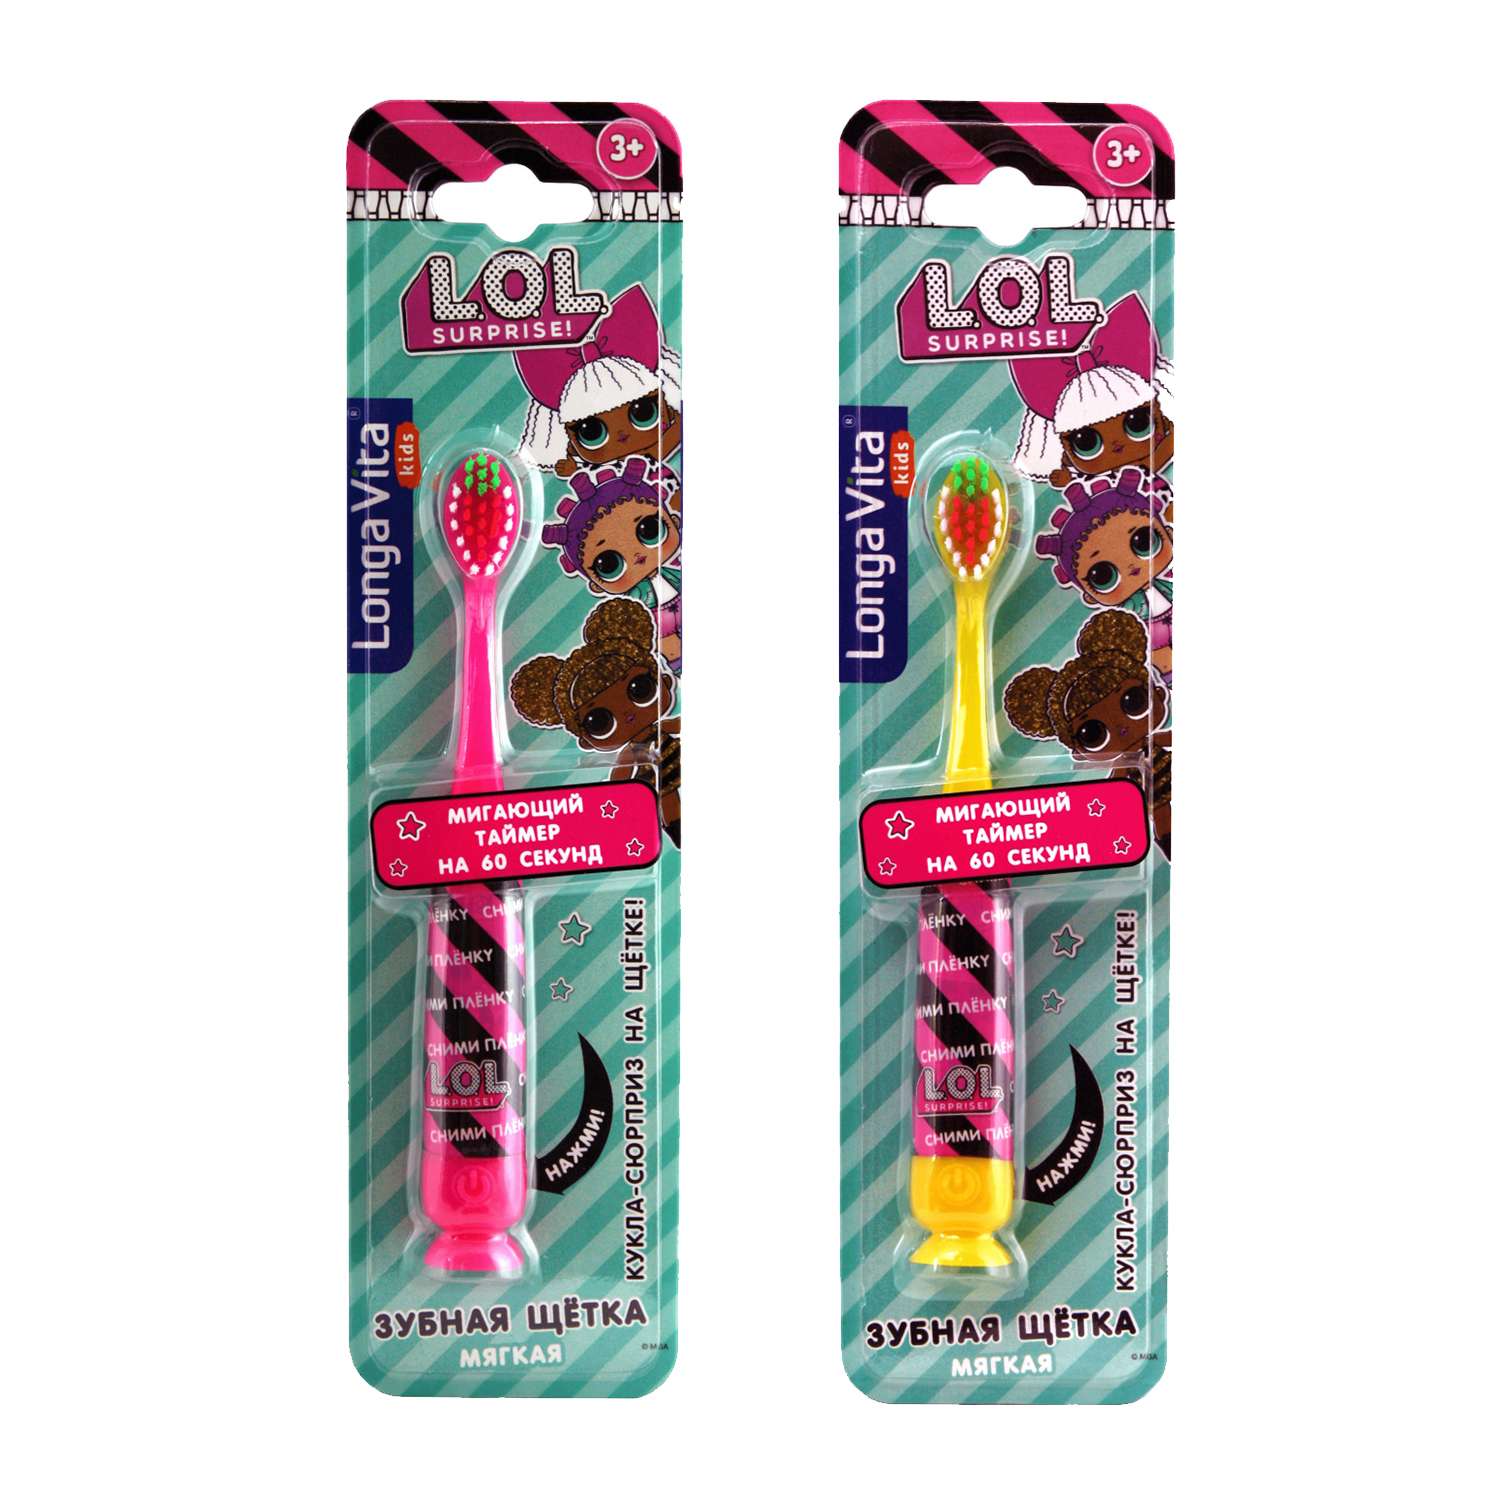 Зубная щетка Longa Vita for kids L.O.L Surprise на присоске с мигающим таймером с 3лет в ассортименте - фото 1